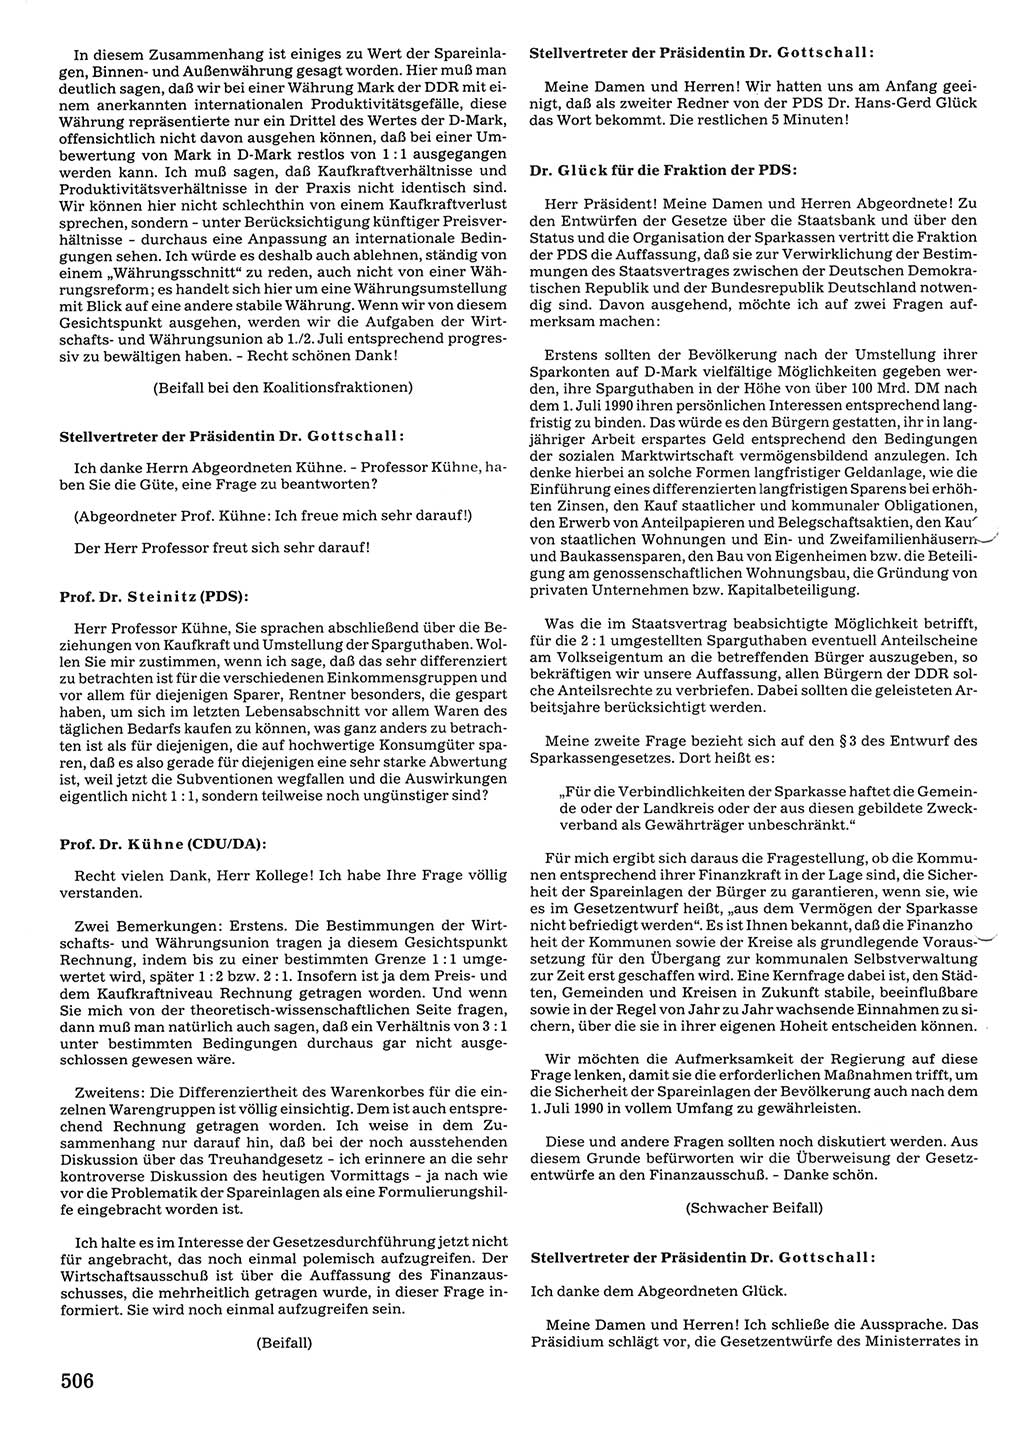 Tagungen der Volkskammer (VK) der Deutschen Demokratischen Republik (DDR), 10. Wahlperiode 1990, Seite 506 (VK. DDR 10. WP. 1990, Prot. Tg. 1-38, 5.4.-2.10.1990, S. 506)